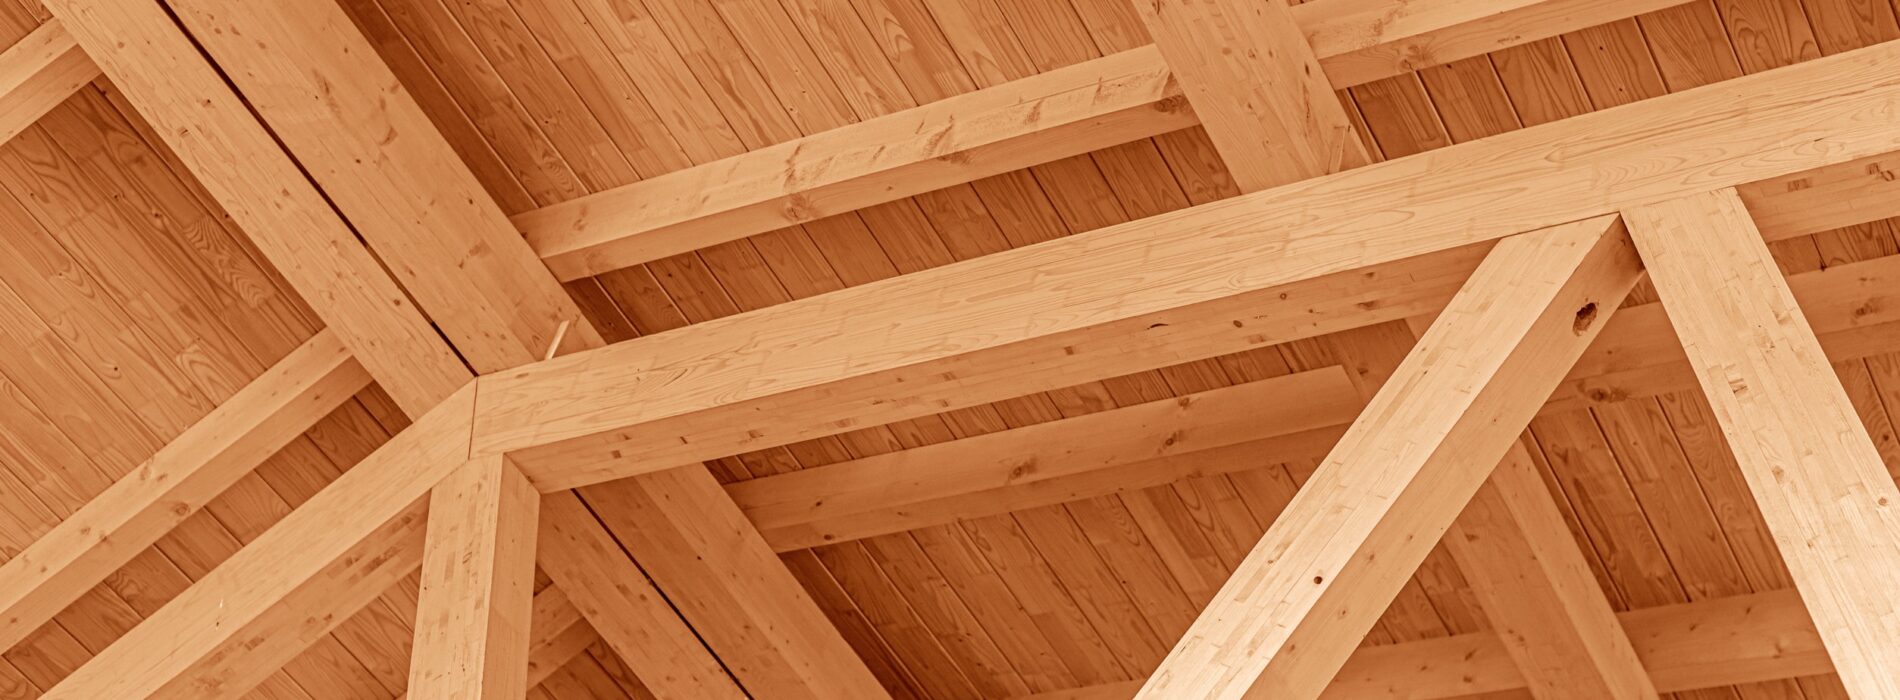 Co ciekawi inwestorów kupujących drewno konstrukcyjne?